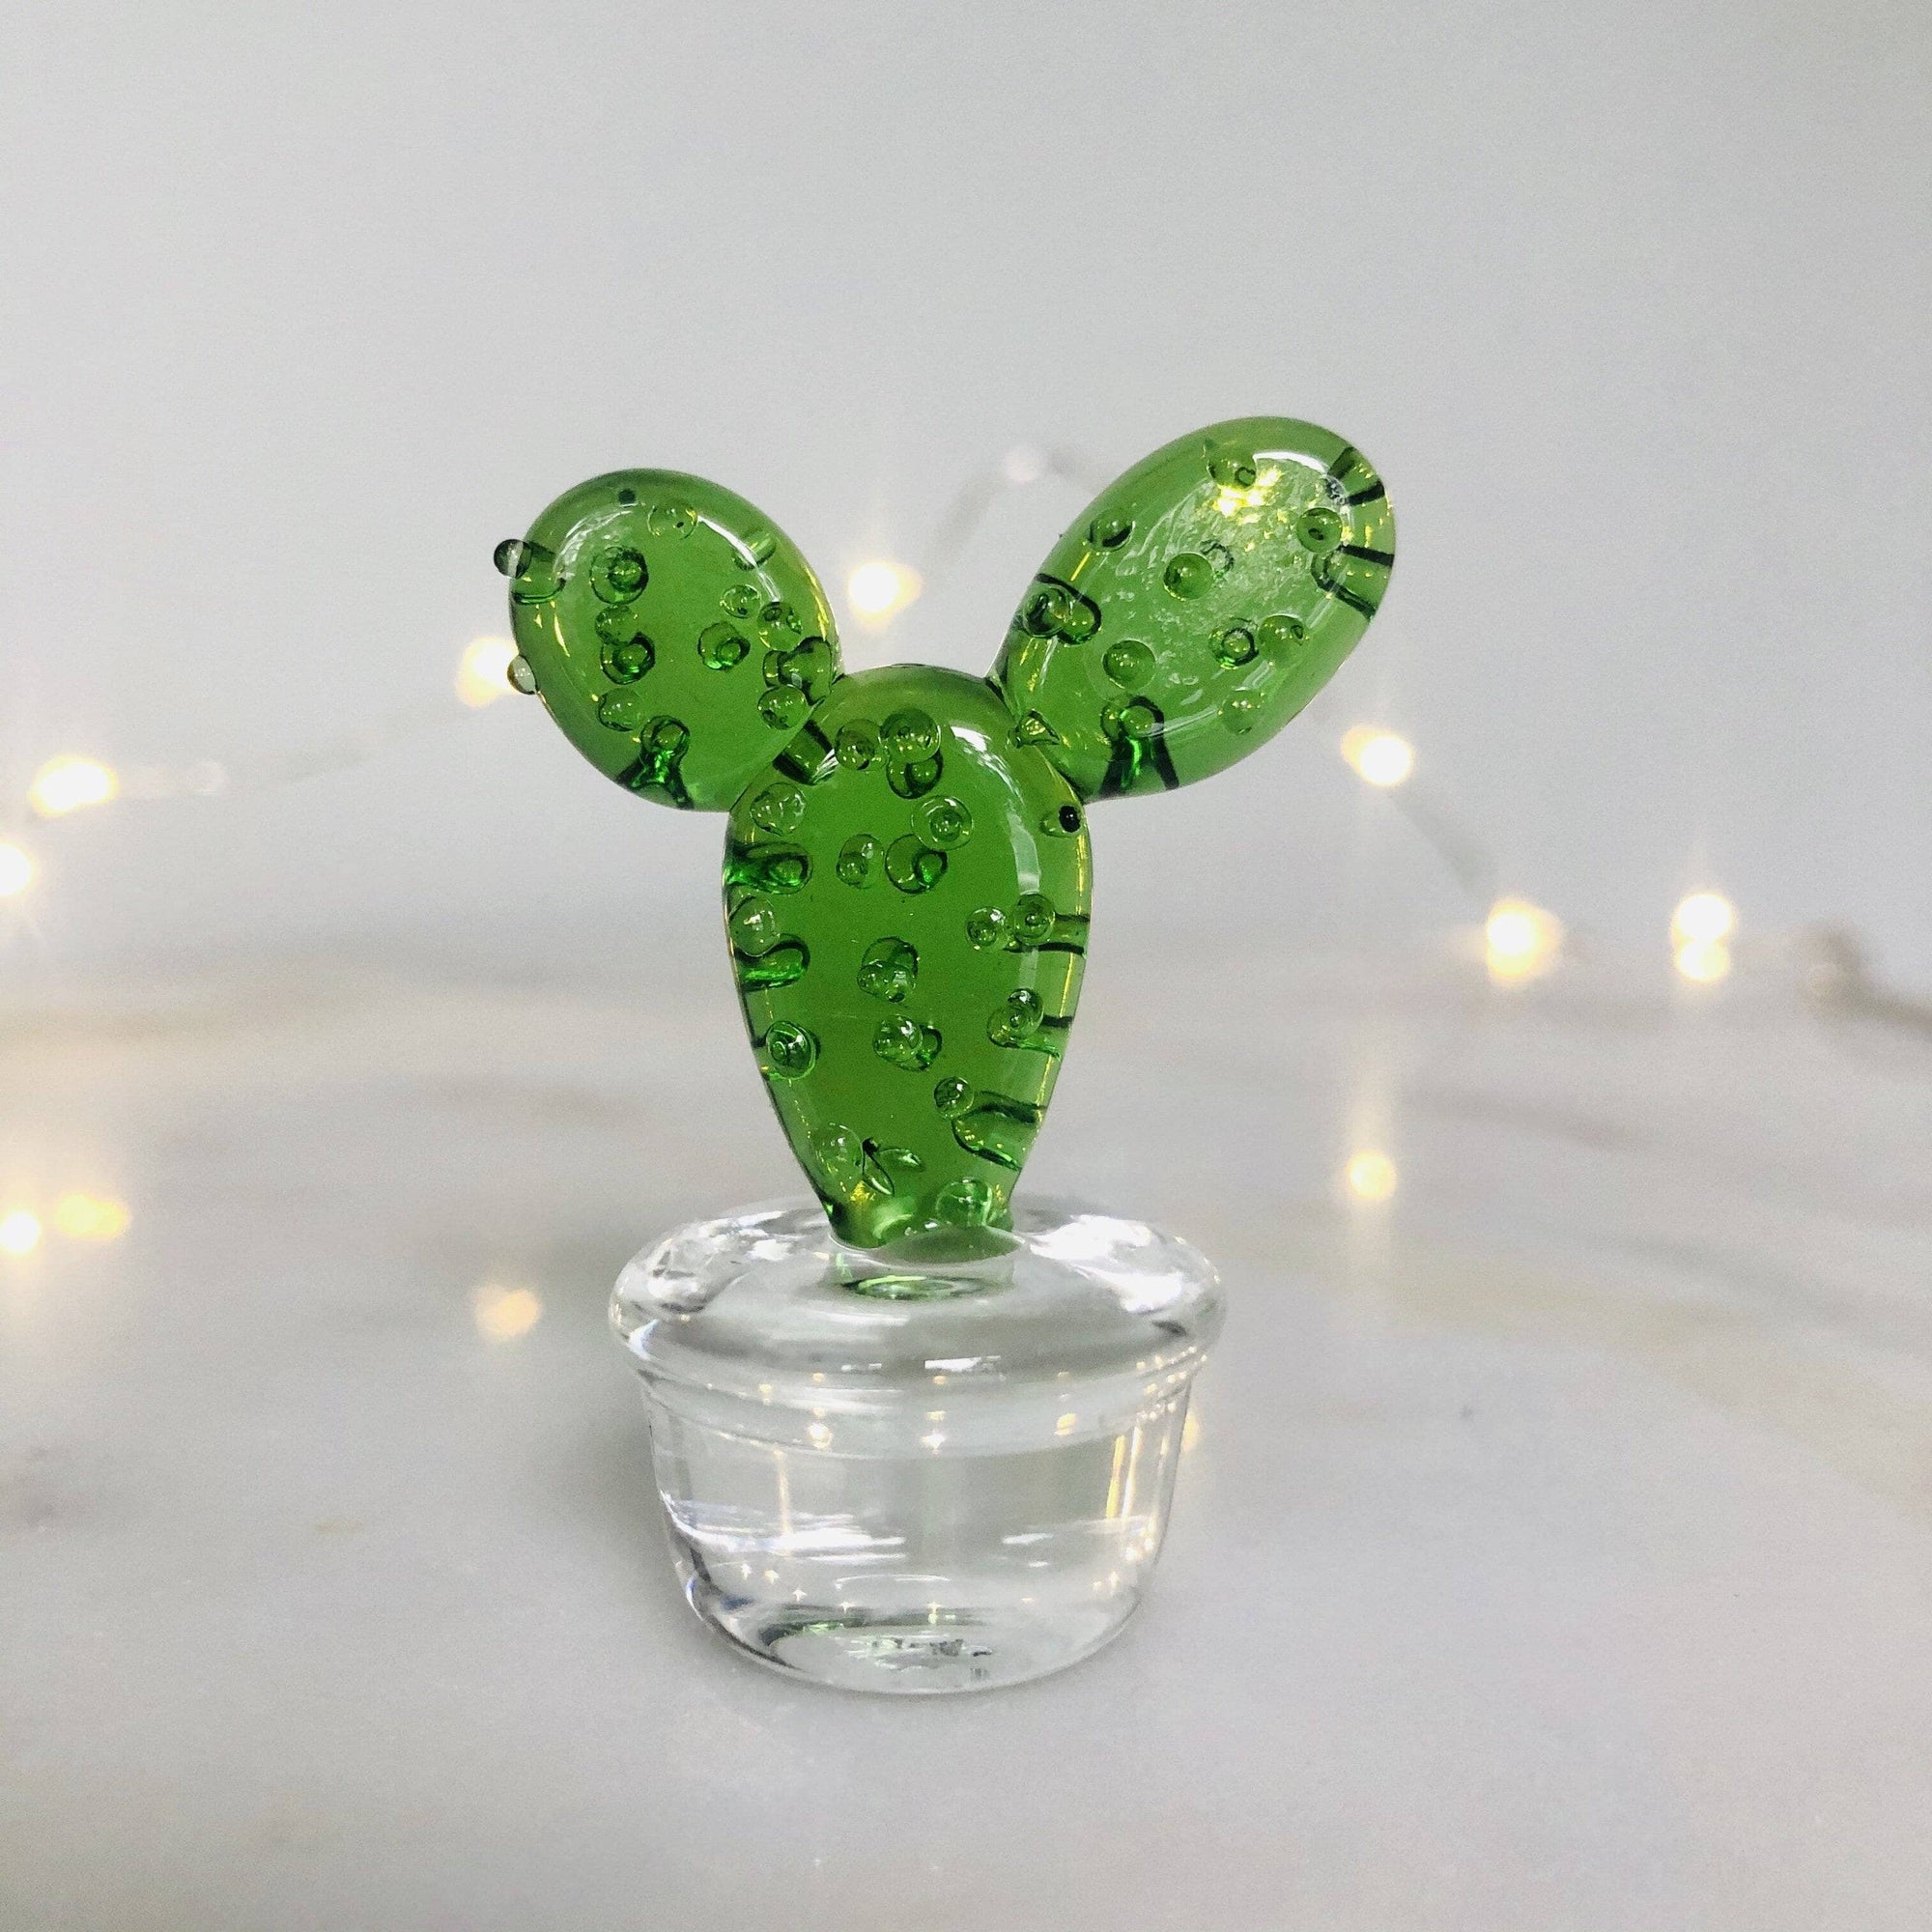 Glass Cactus Tall Minnie Miniature - 